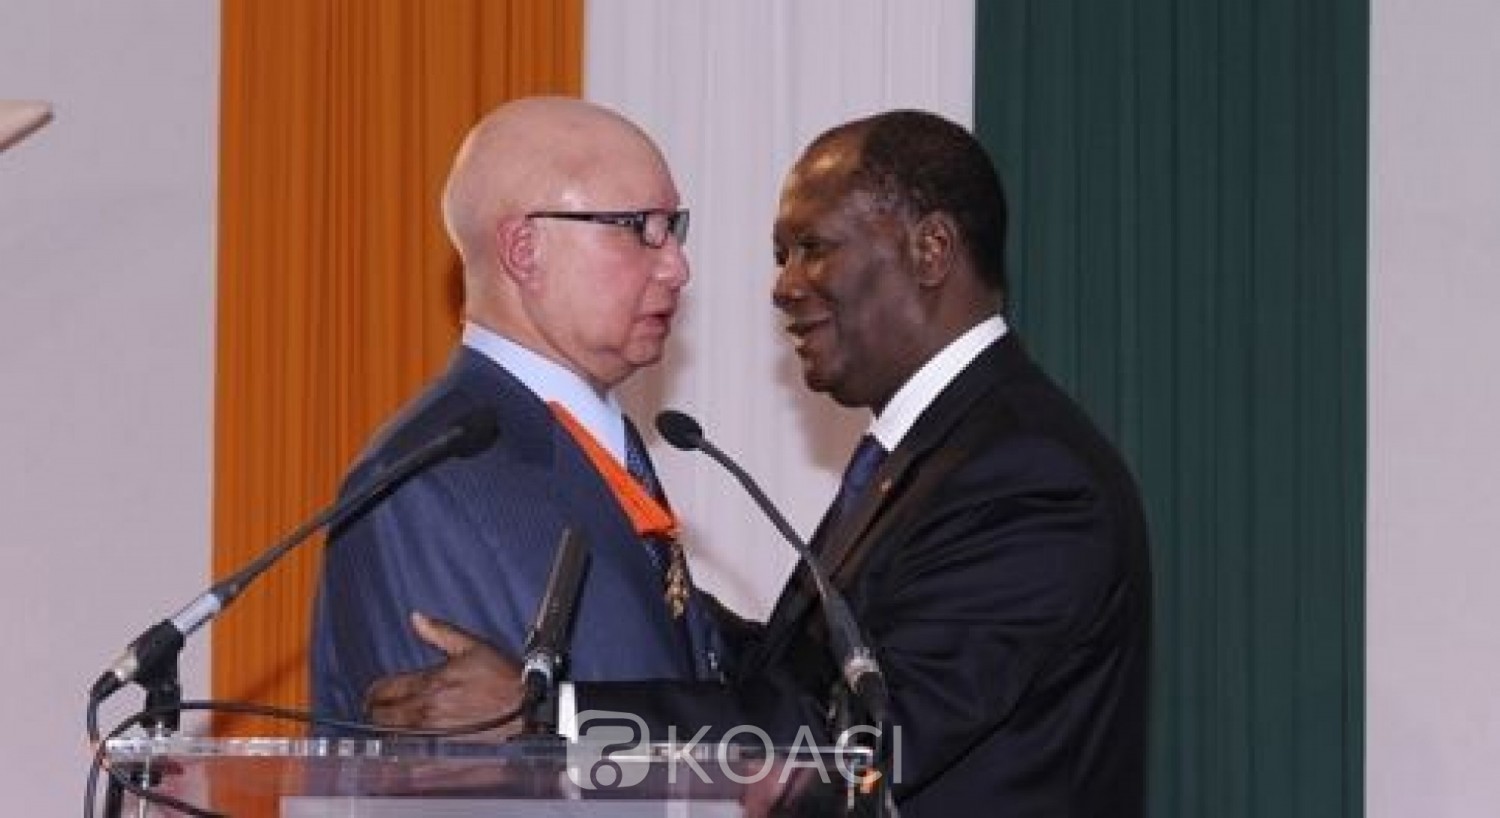 Côte d'Ivoire : Décès en France de l'Ambassadeur Eugène Aïdarra